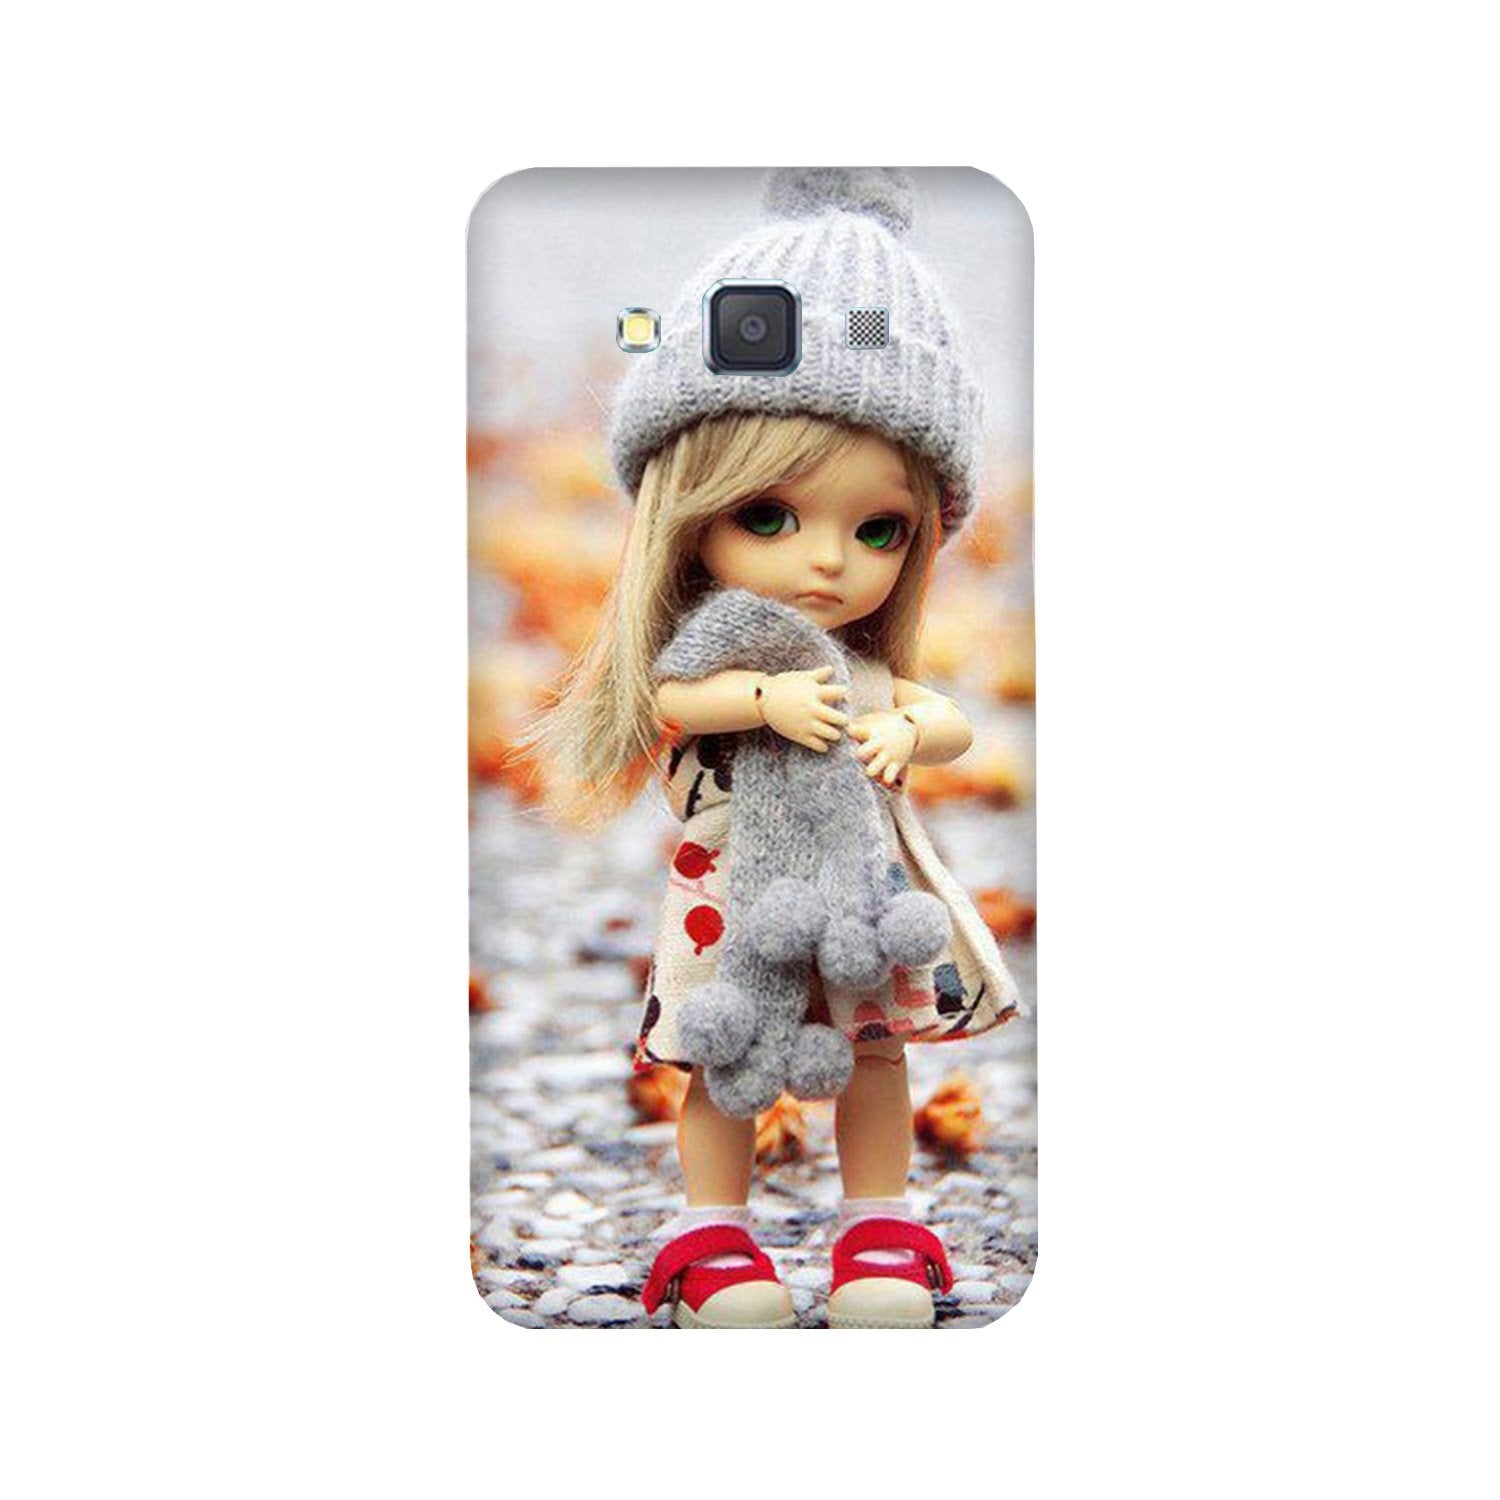 Cute Doll Case for Galaxy J7 (2016)